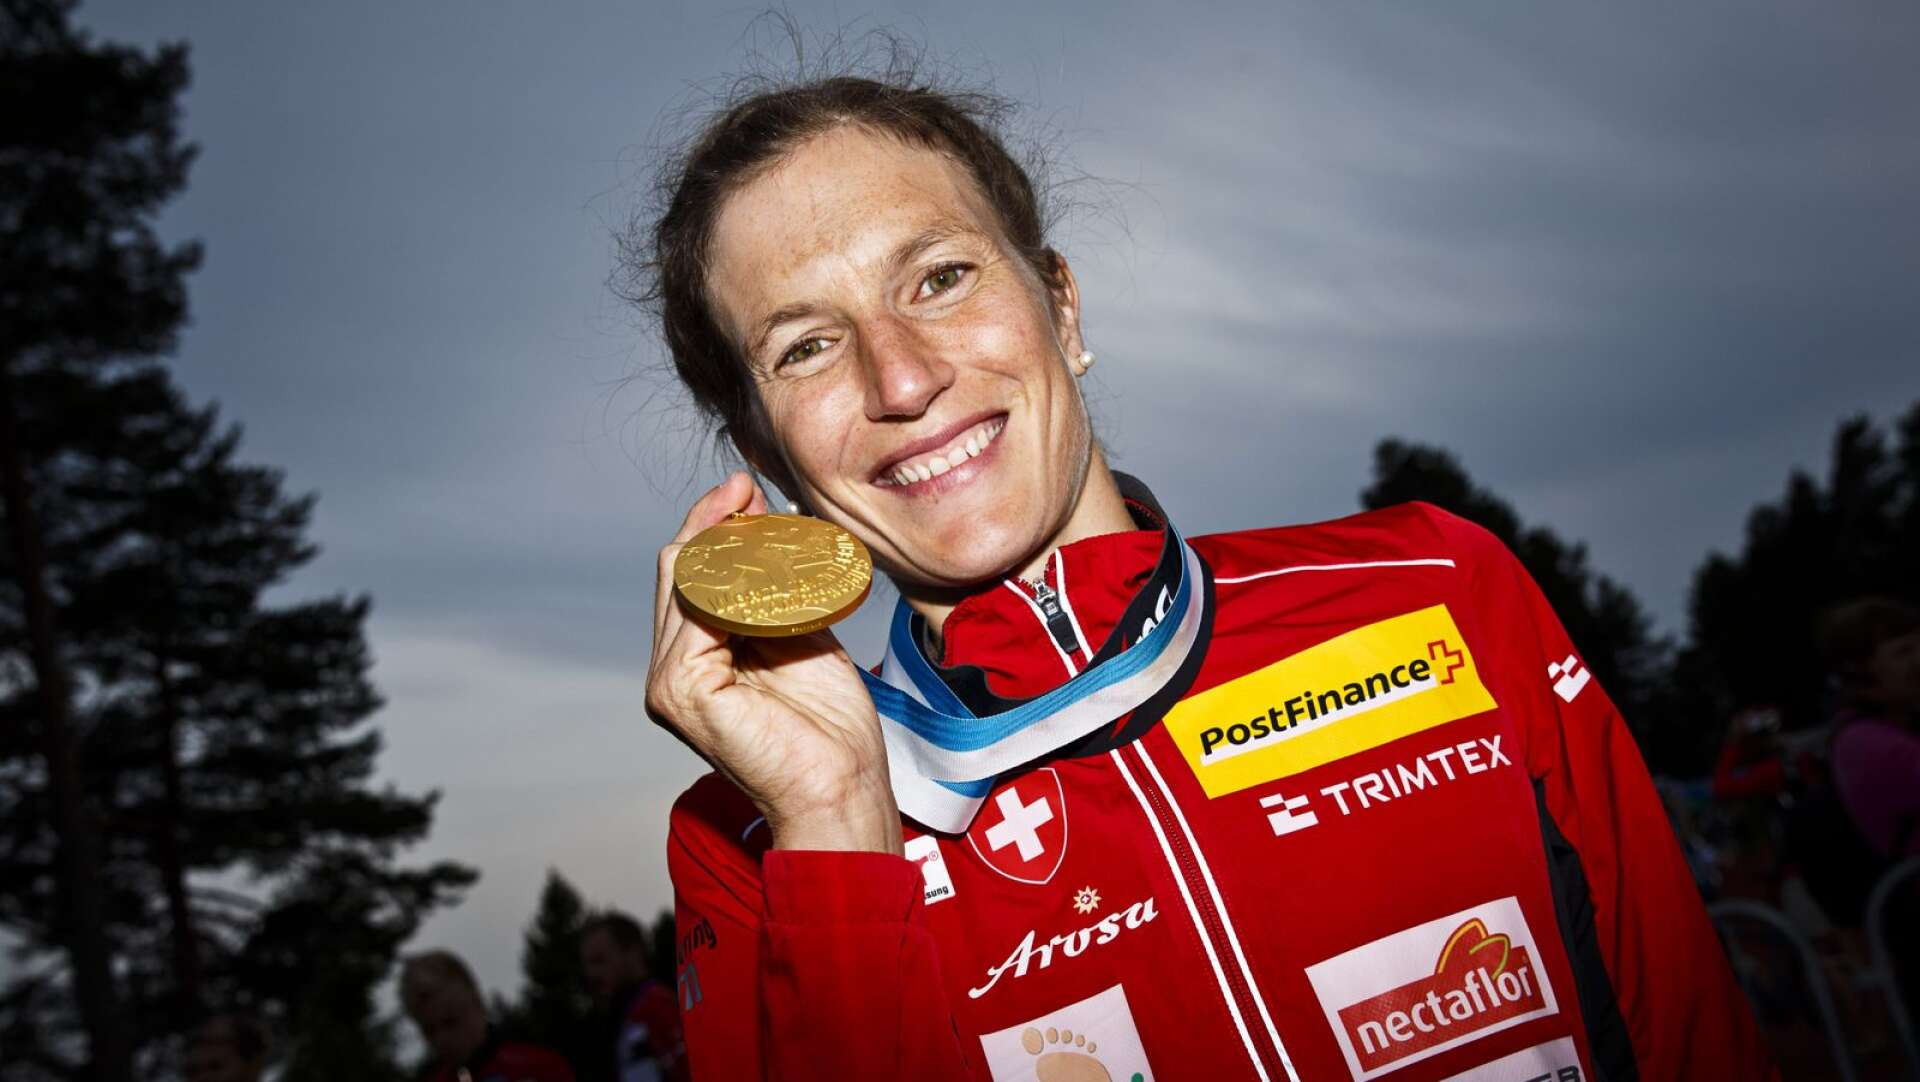 Schweiziskan Simone Niggli, världens genom tidernas främsta orienterare med 23 VM-guld på meritlistan, kommer till Värmland för att springa premiärtävlingarna för säsongen i Ekshärad och Deje.